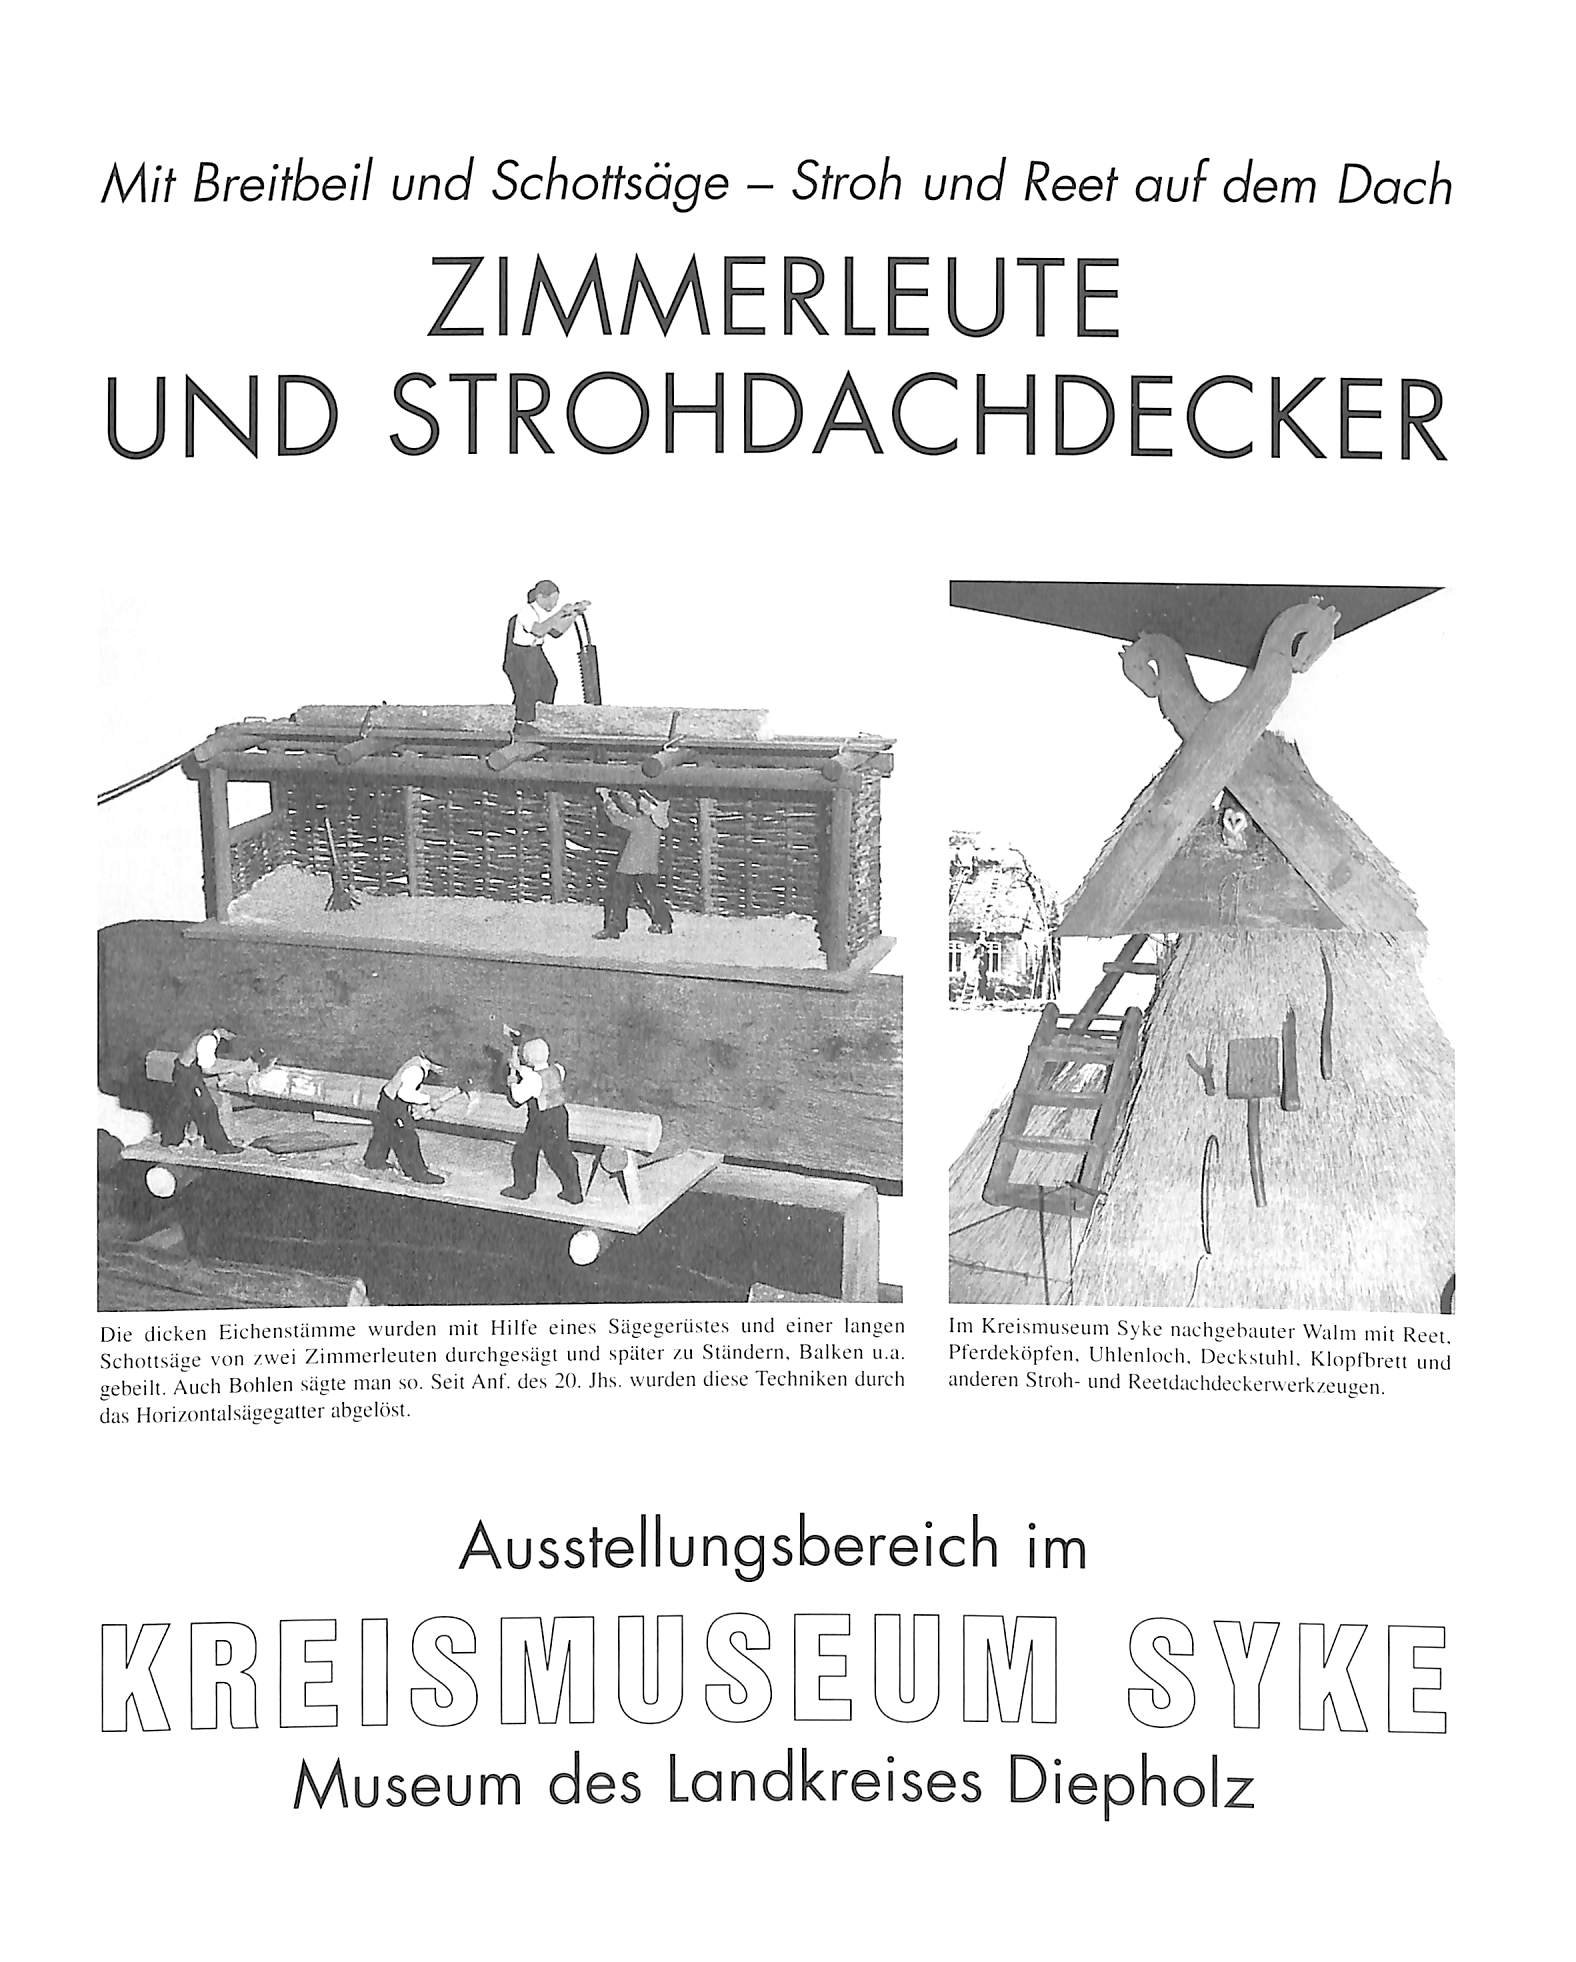 Mit Breitbeil und Schottsäge - Stroh und Reet auf dem Dach. Zimmerleute und Strohdachdecker. (Kreismuseum Syke CC BY-NC-SA)